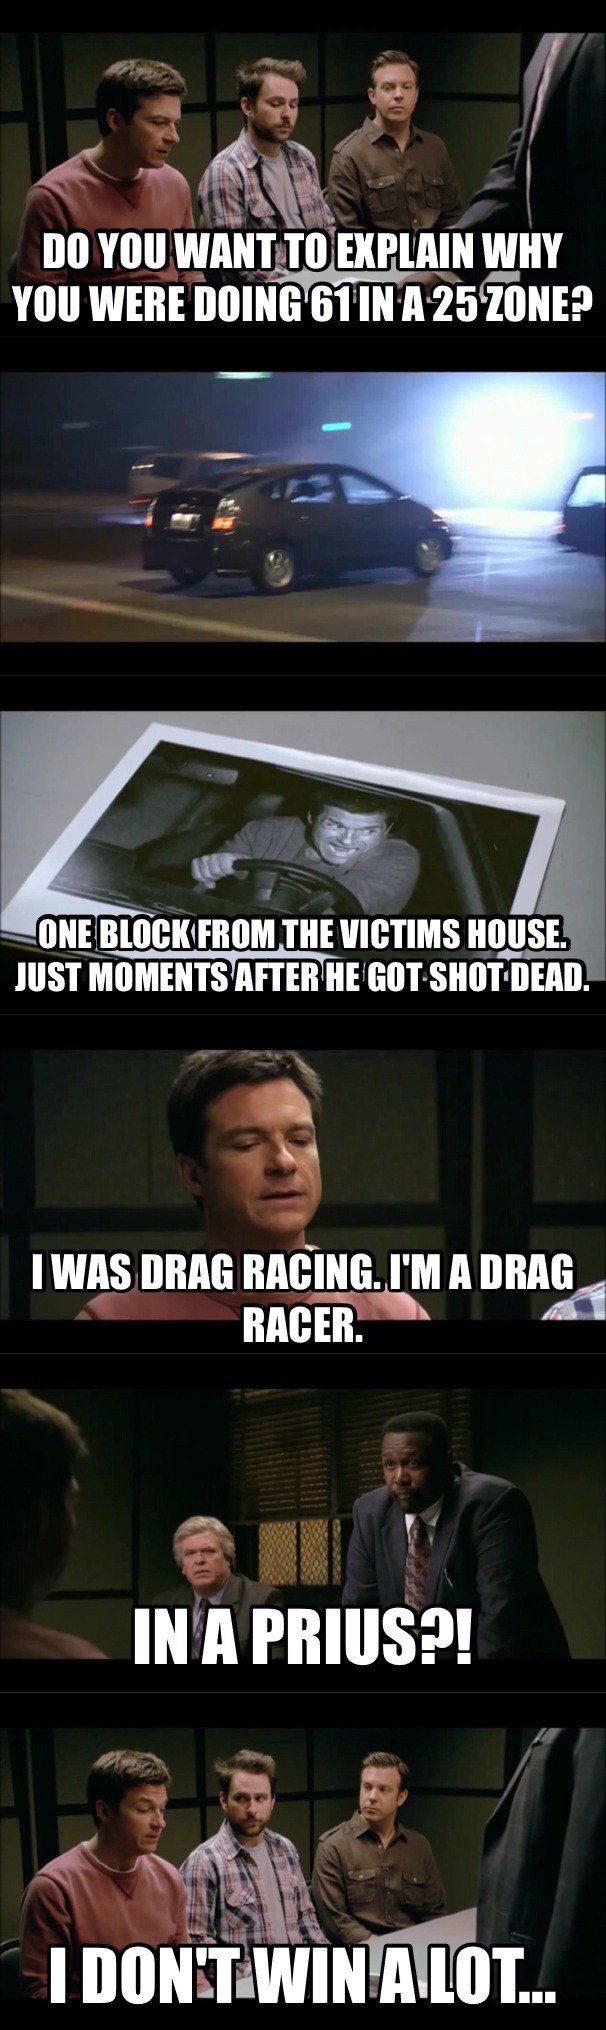 drag racer - meme